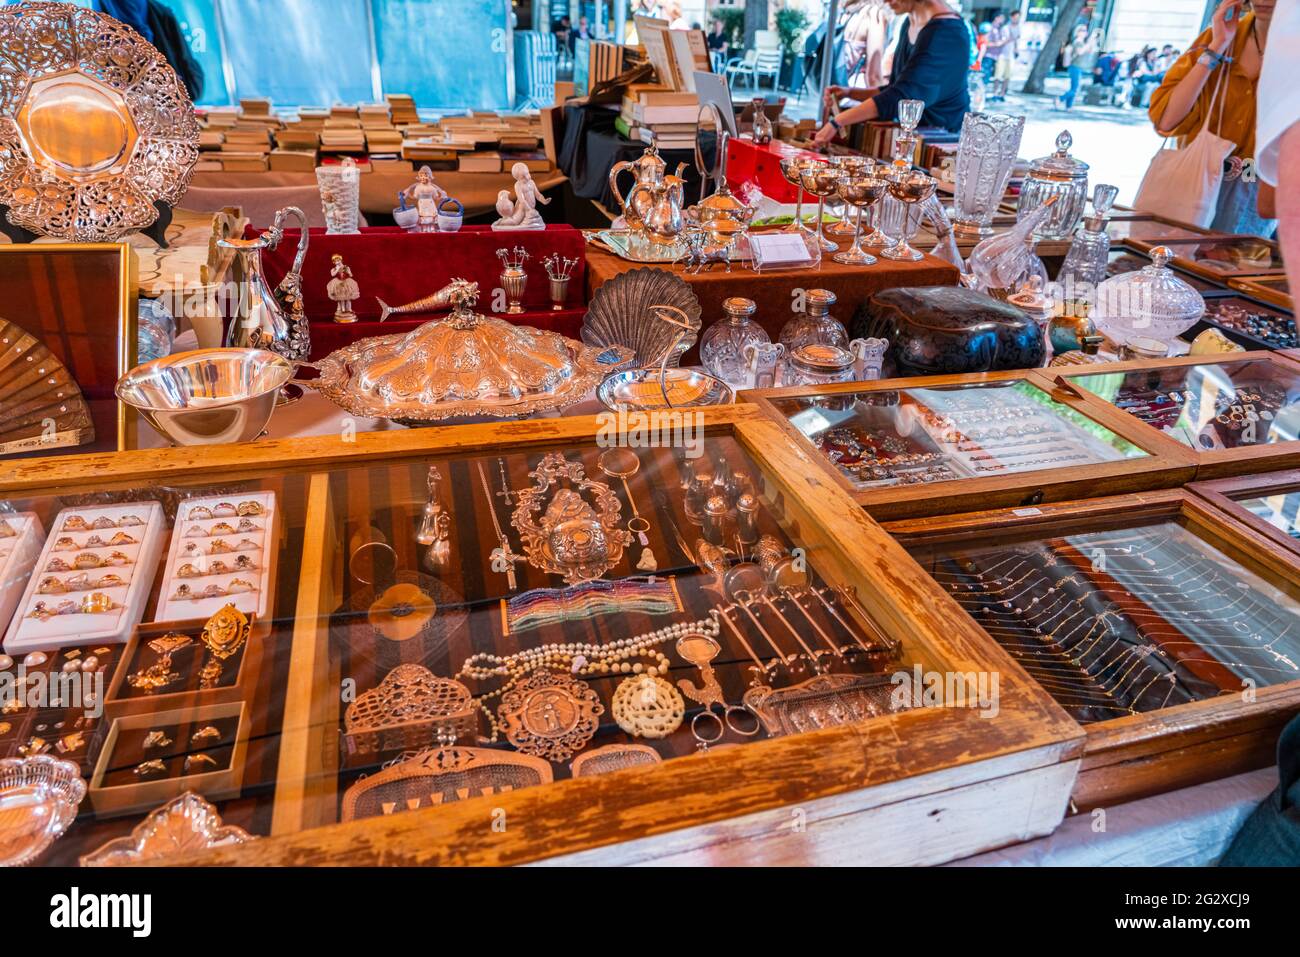 BARCELONA, SPANIEN - 10. JUNI 2019: Antike Objekte, Münzen, Juwelen, Geschirr und andere Utensilien auf einem Flohmarkt Stockfoto